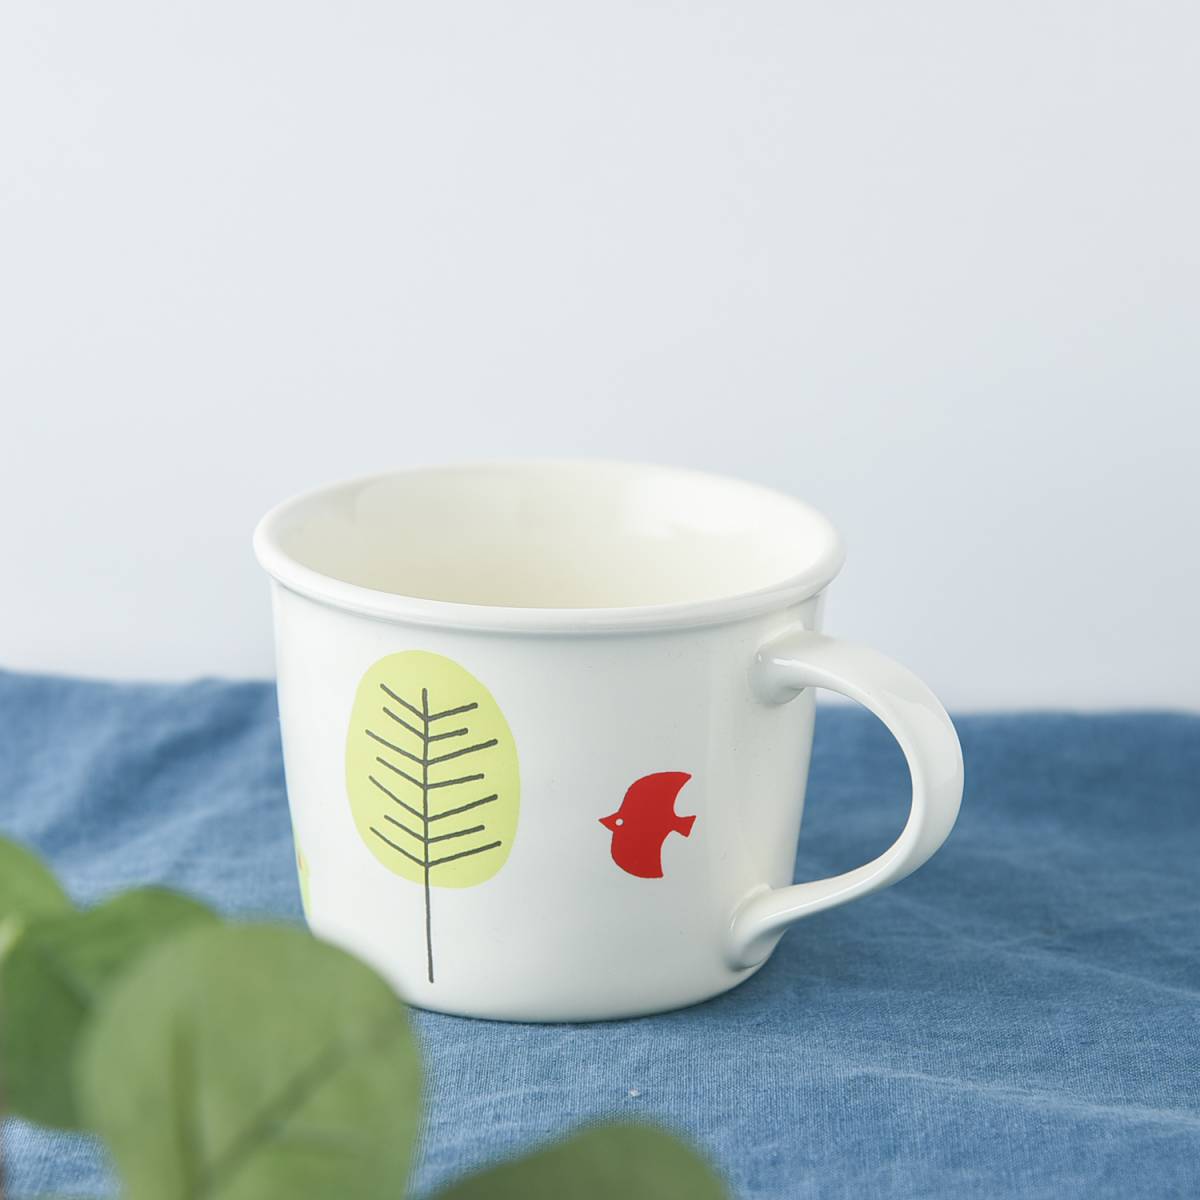 【特価品】mori-mug 12.5cmマグカップ[B品][美濃焼]